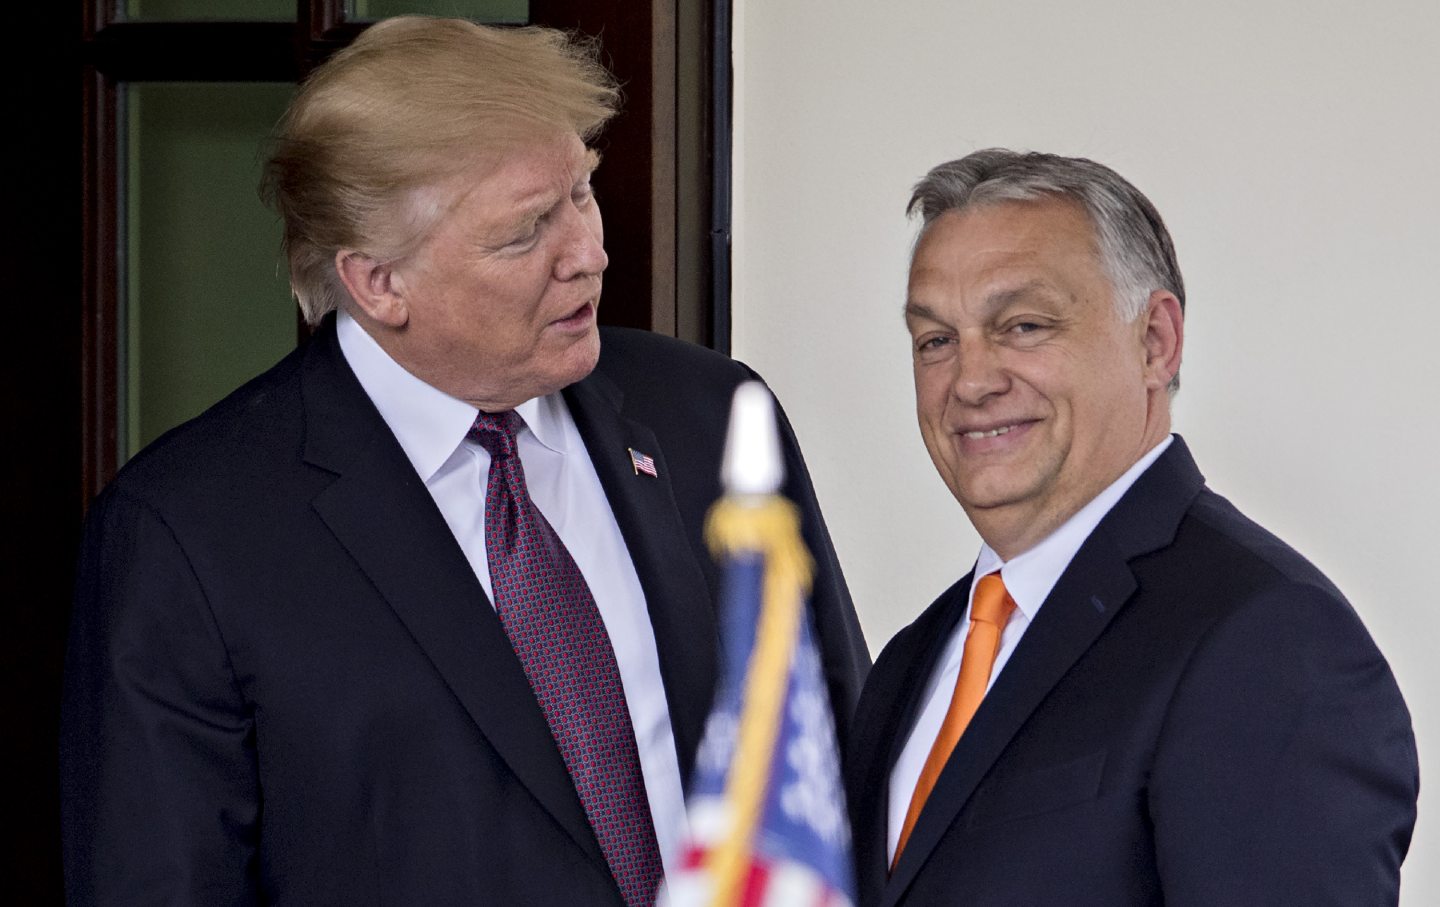 President Trump Hosts Hungary's Prime Minister Viktor Orban At The White House